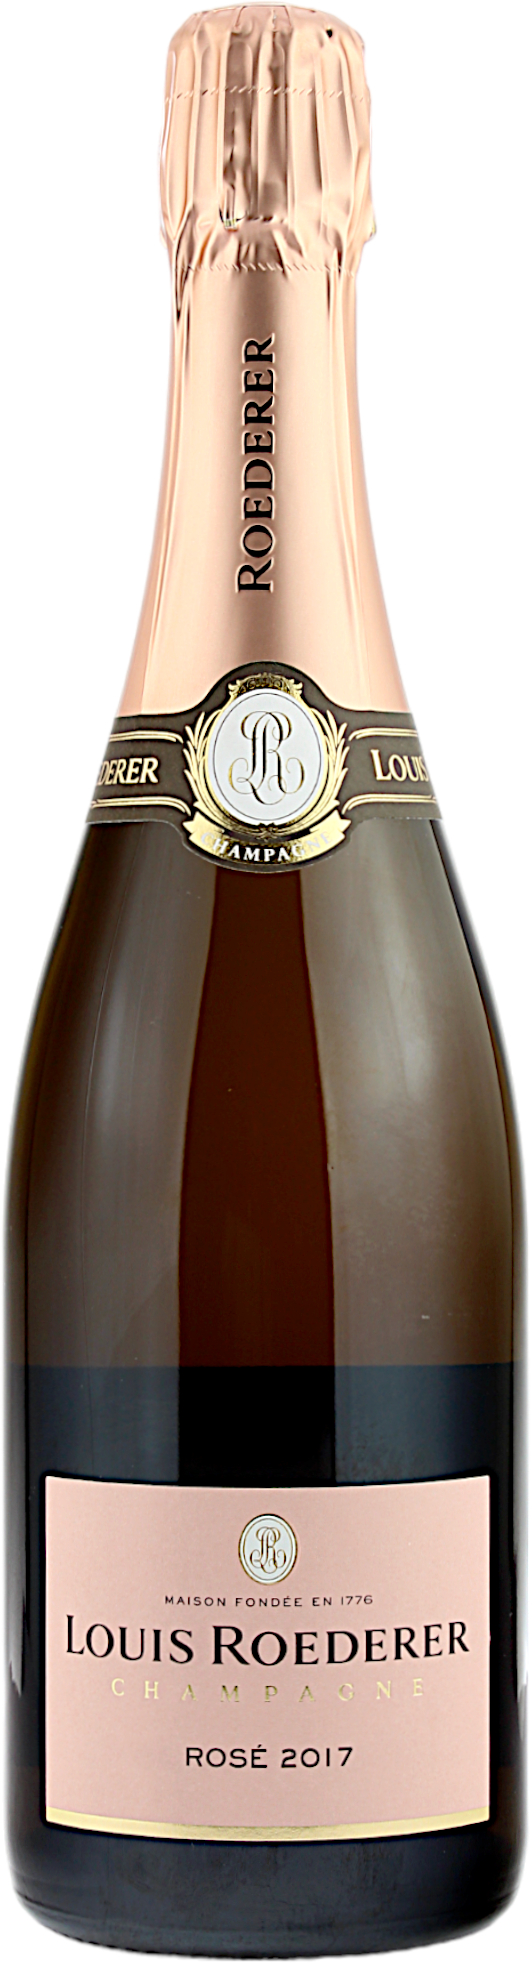 Louis Roederer Rose 2017 Champagner 12.5% 0,75l